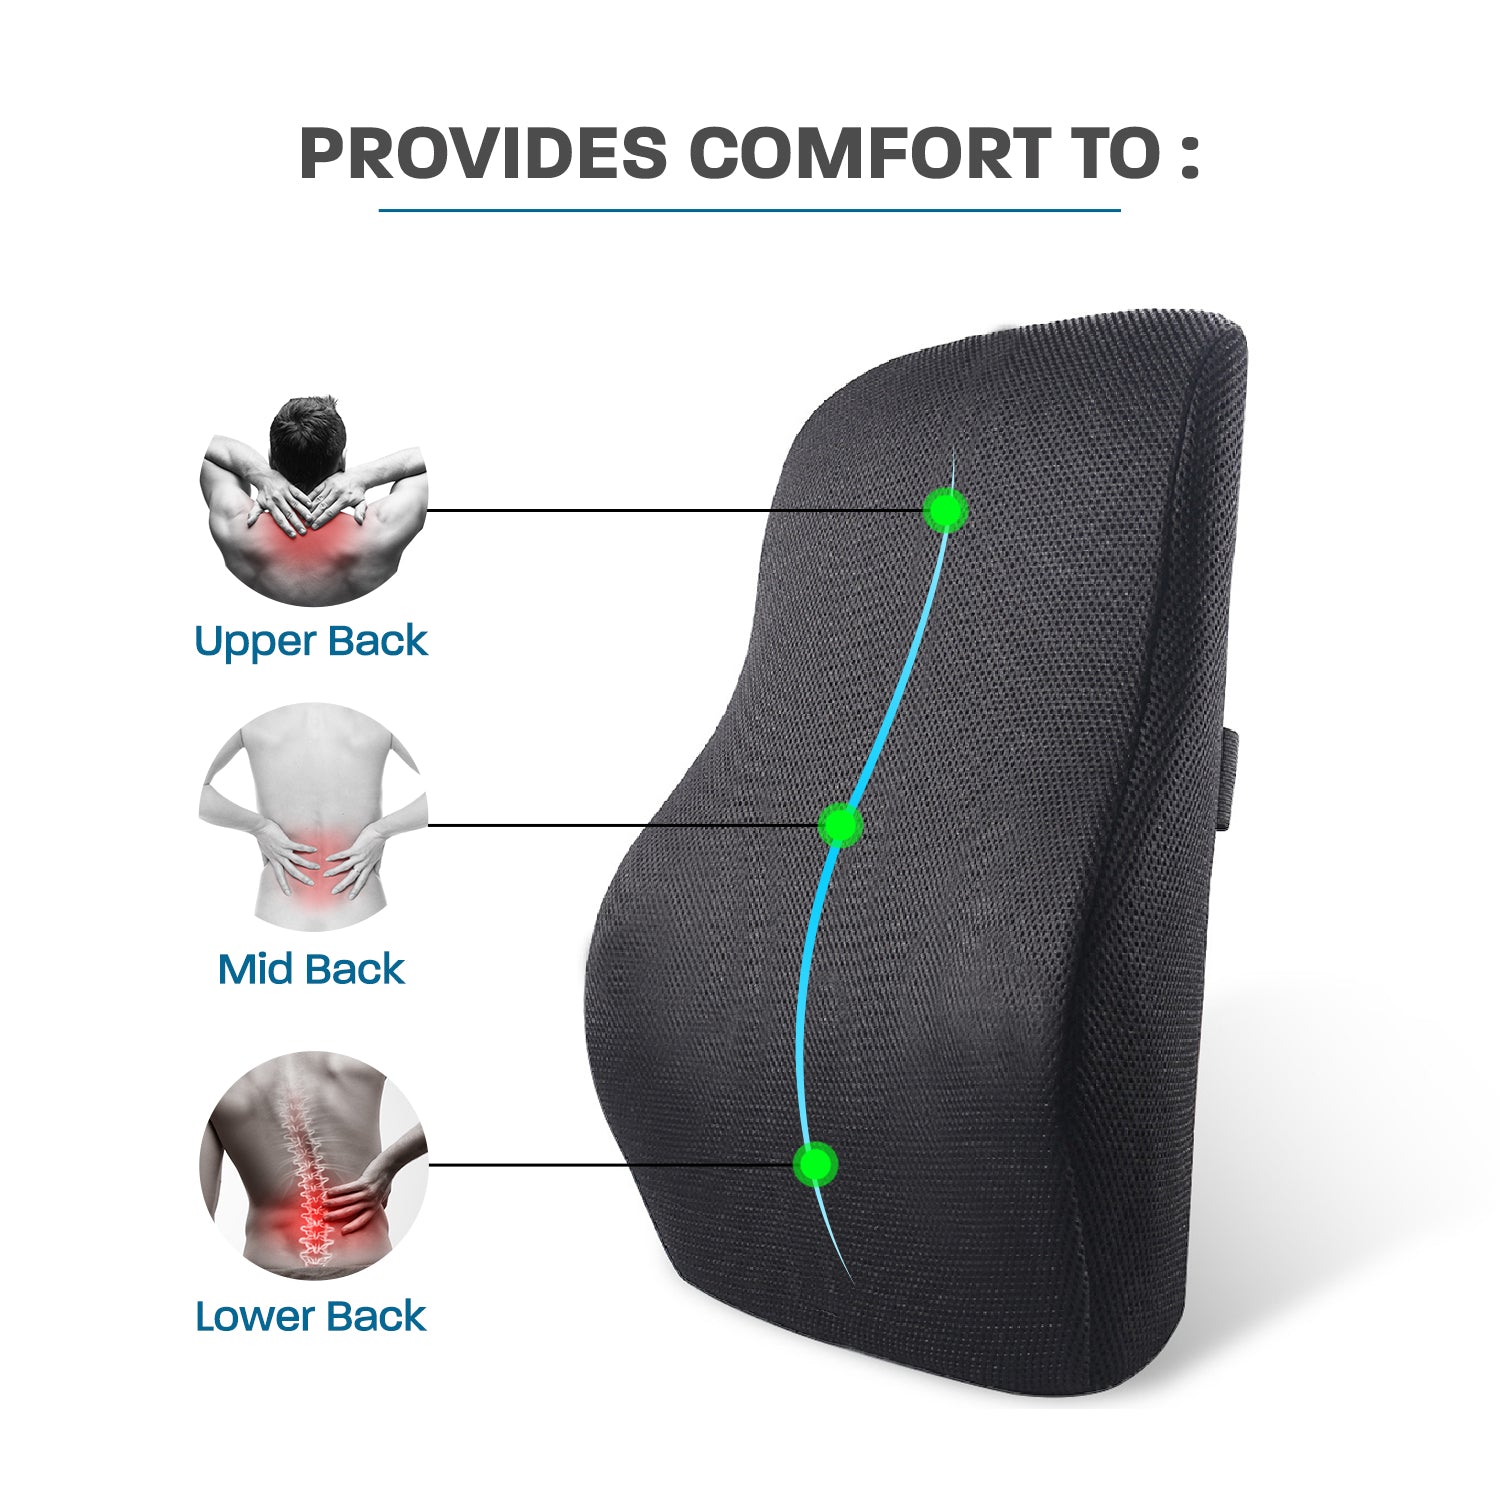 Office Chair Back Support, Lumbar Support Pillow, Lumbar Support